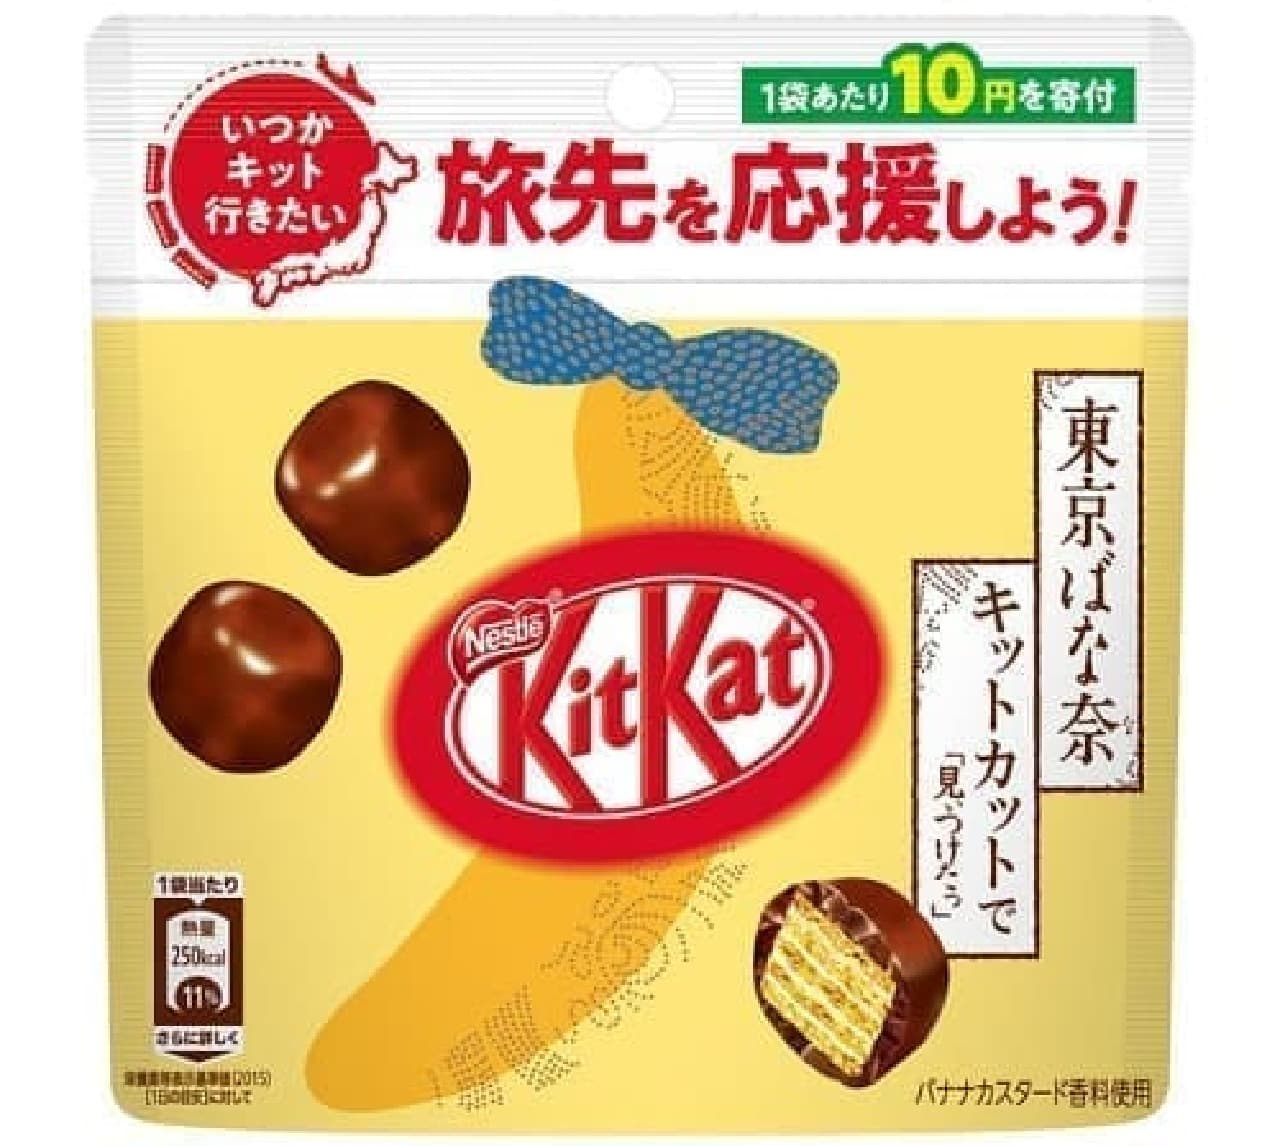 Tokyo Banana KitKat "I found it" pouch